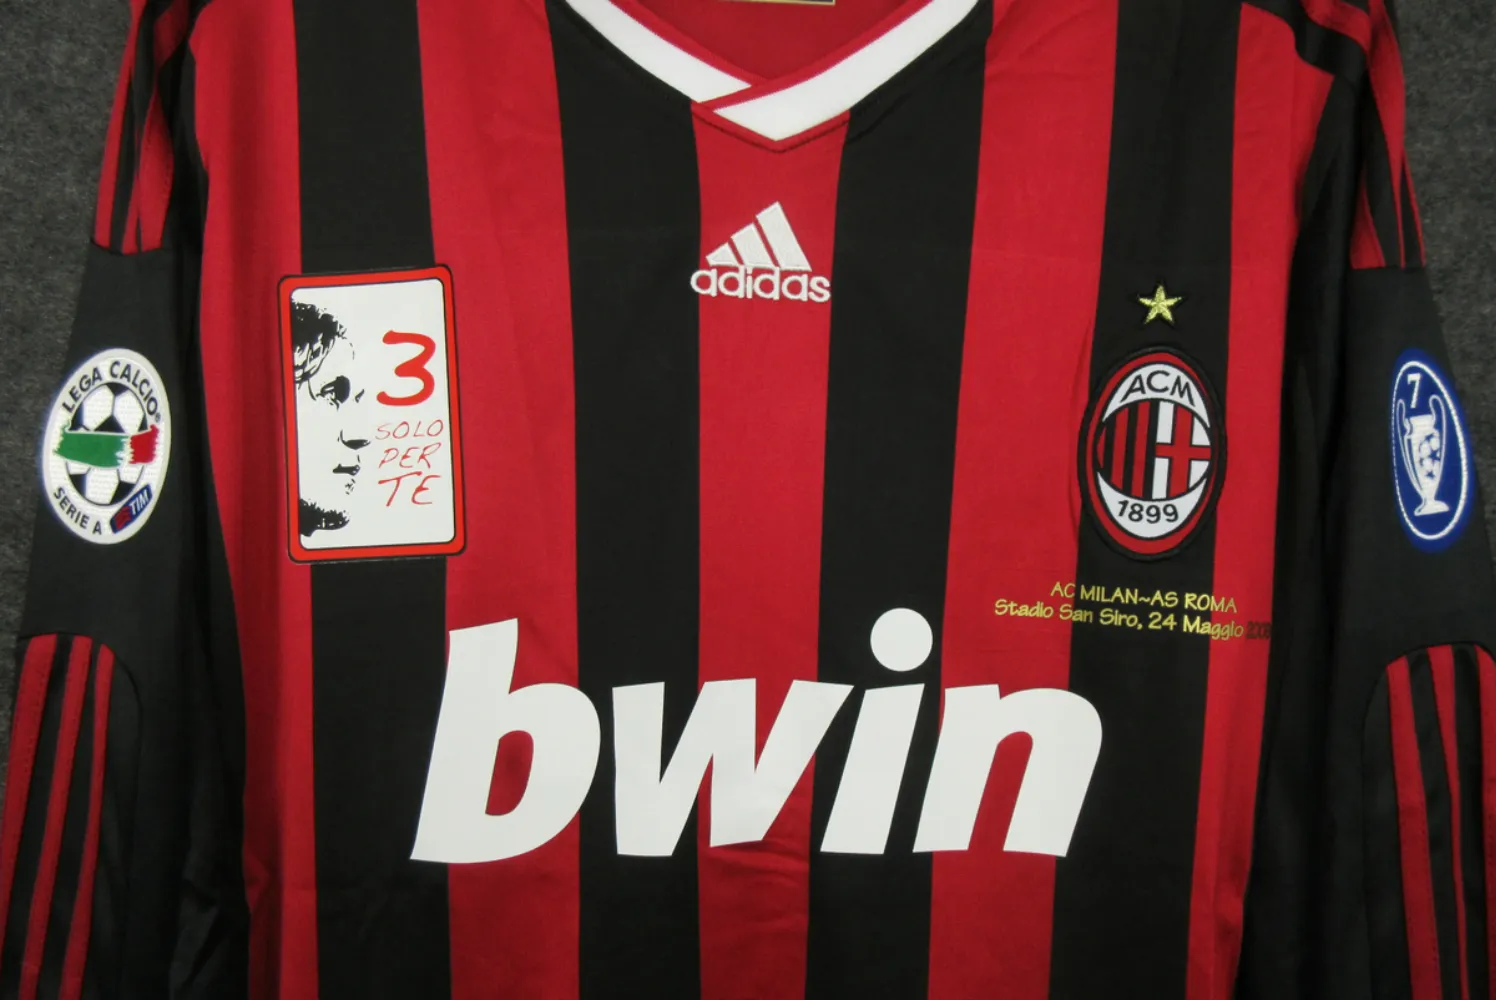 karakter Vooruitgang Productief AC Milan 'Beckham 23' 2009/2010 | Retro Home Jersey - Retro Sports Locker